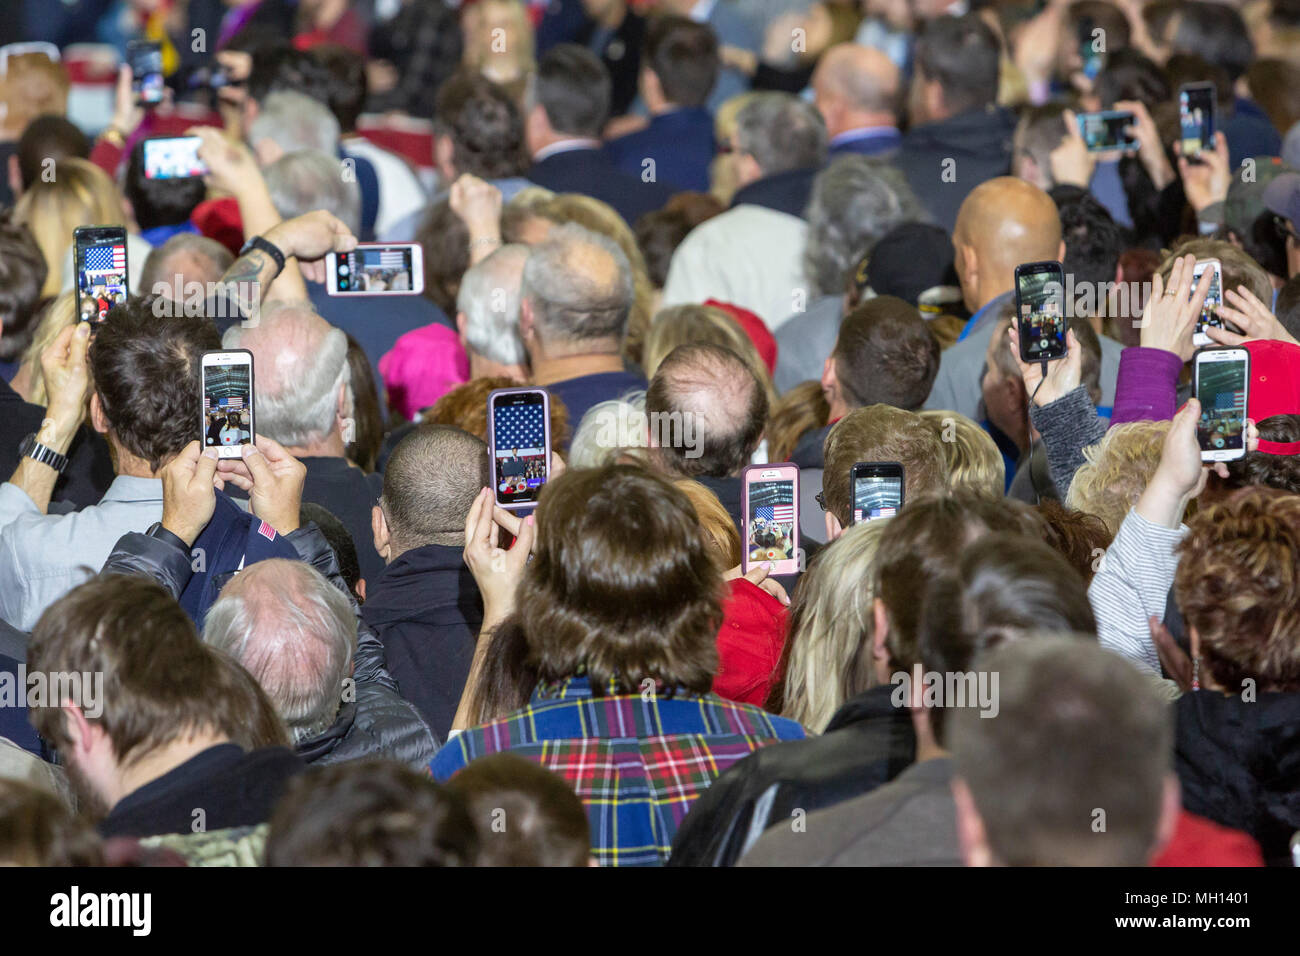 Washington Township, Michigan - Menschen Aufnahme auf ihren Handys zu einem Präsident Donald Trump Kundgebung in Macomb County, Michigan. Stockfoto